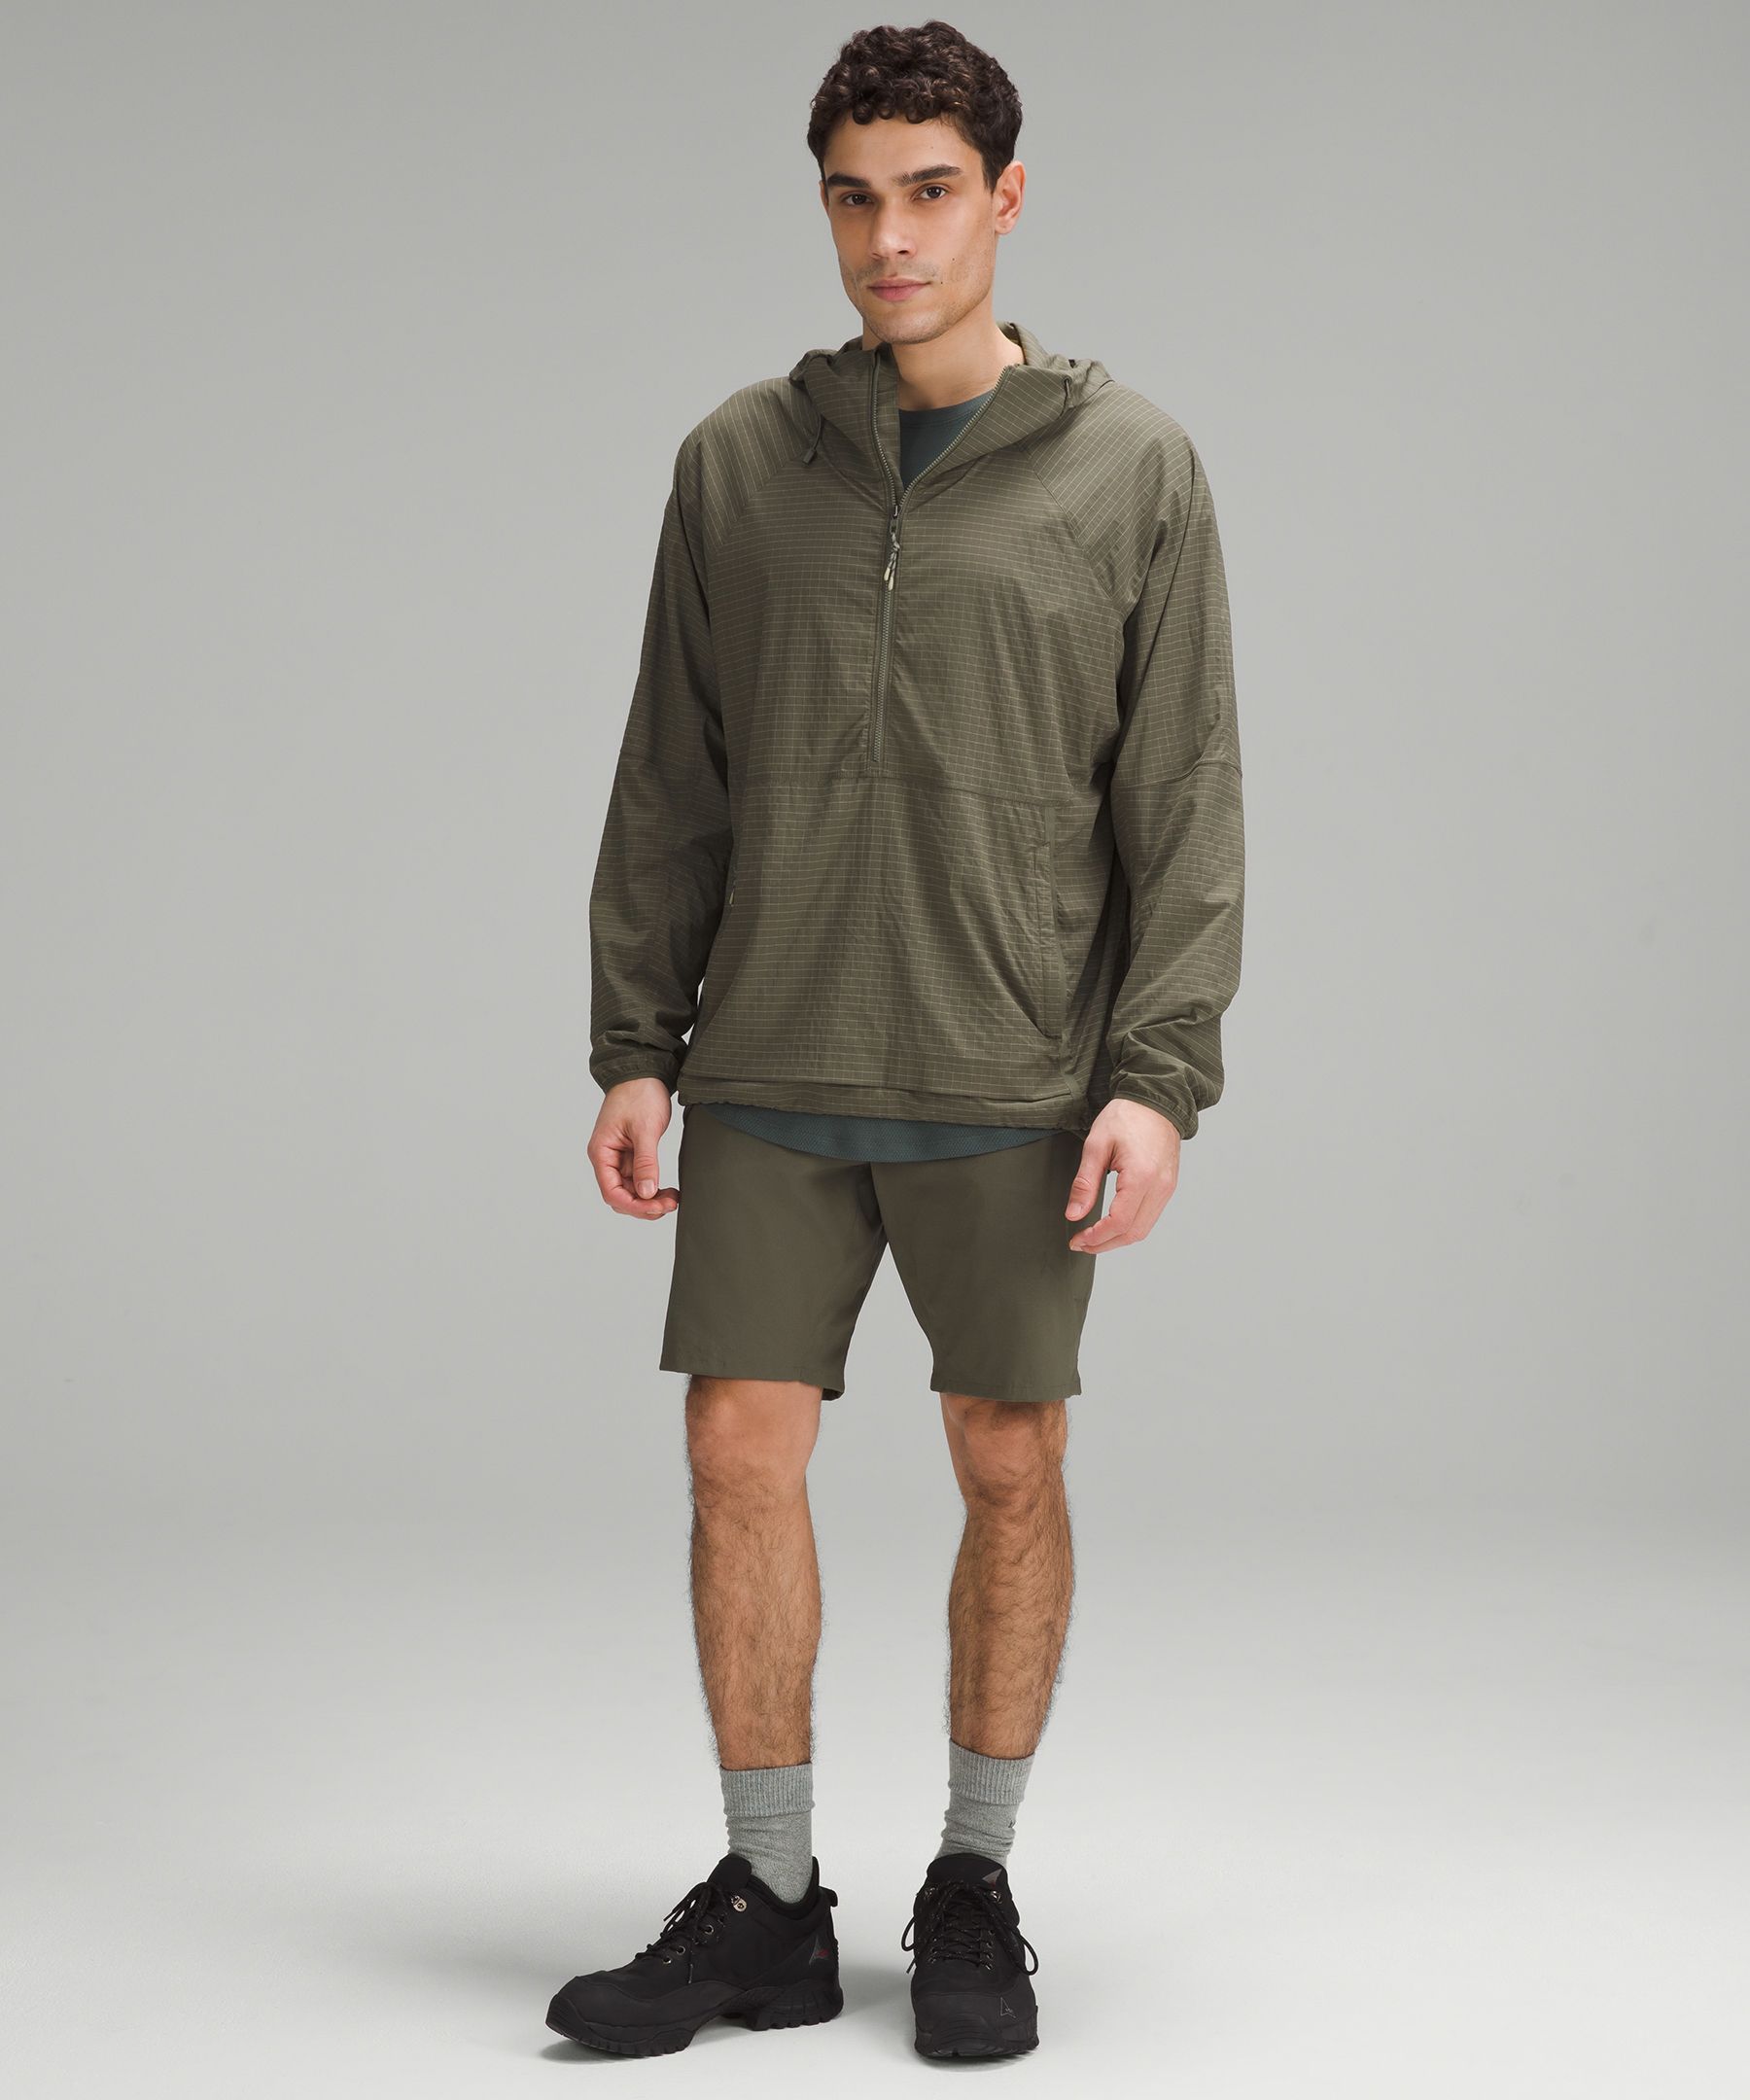 Shop Lululemon Classic-fit Hiking Cargo Shorts 9"